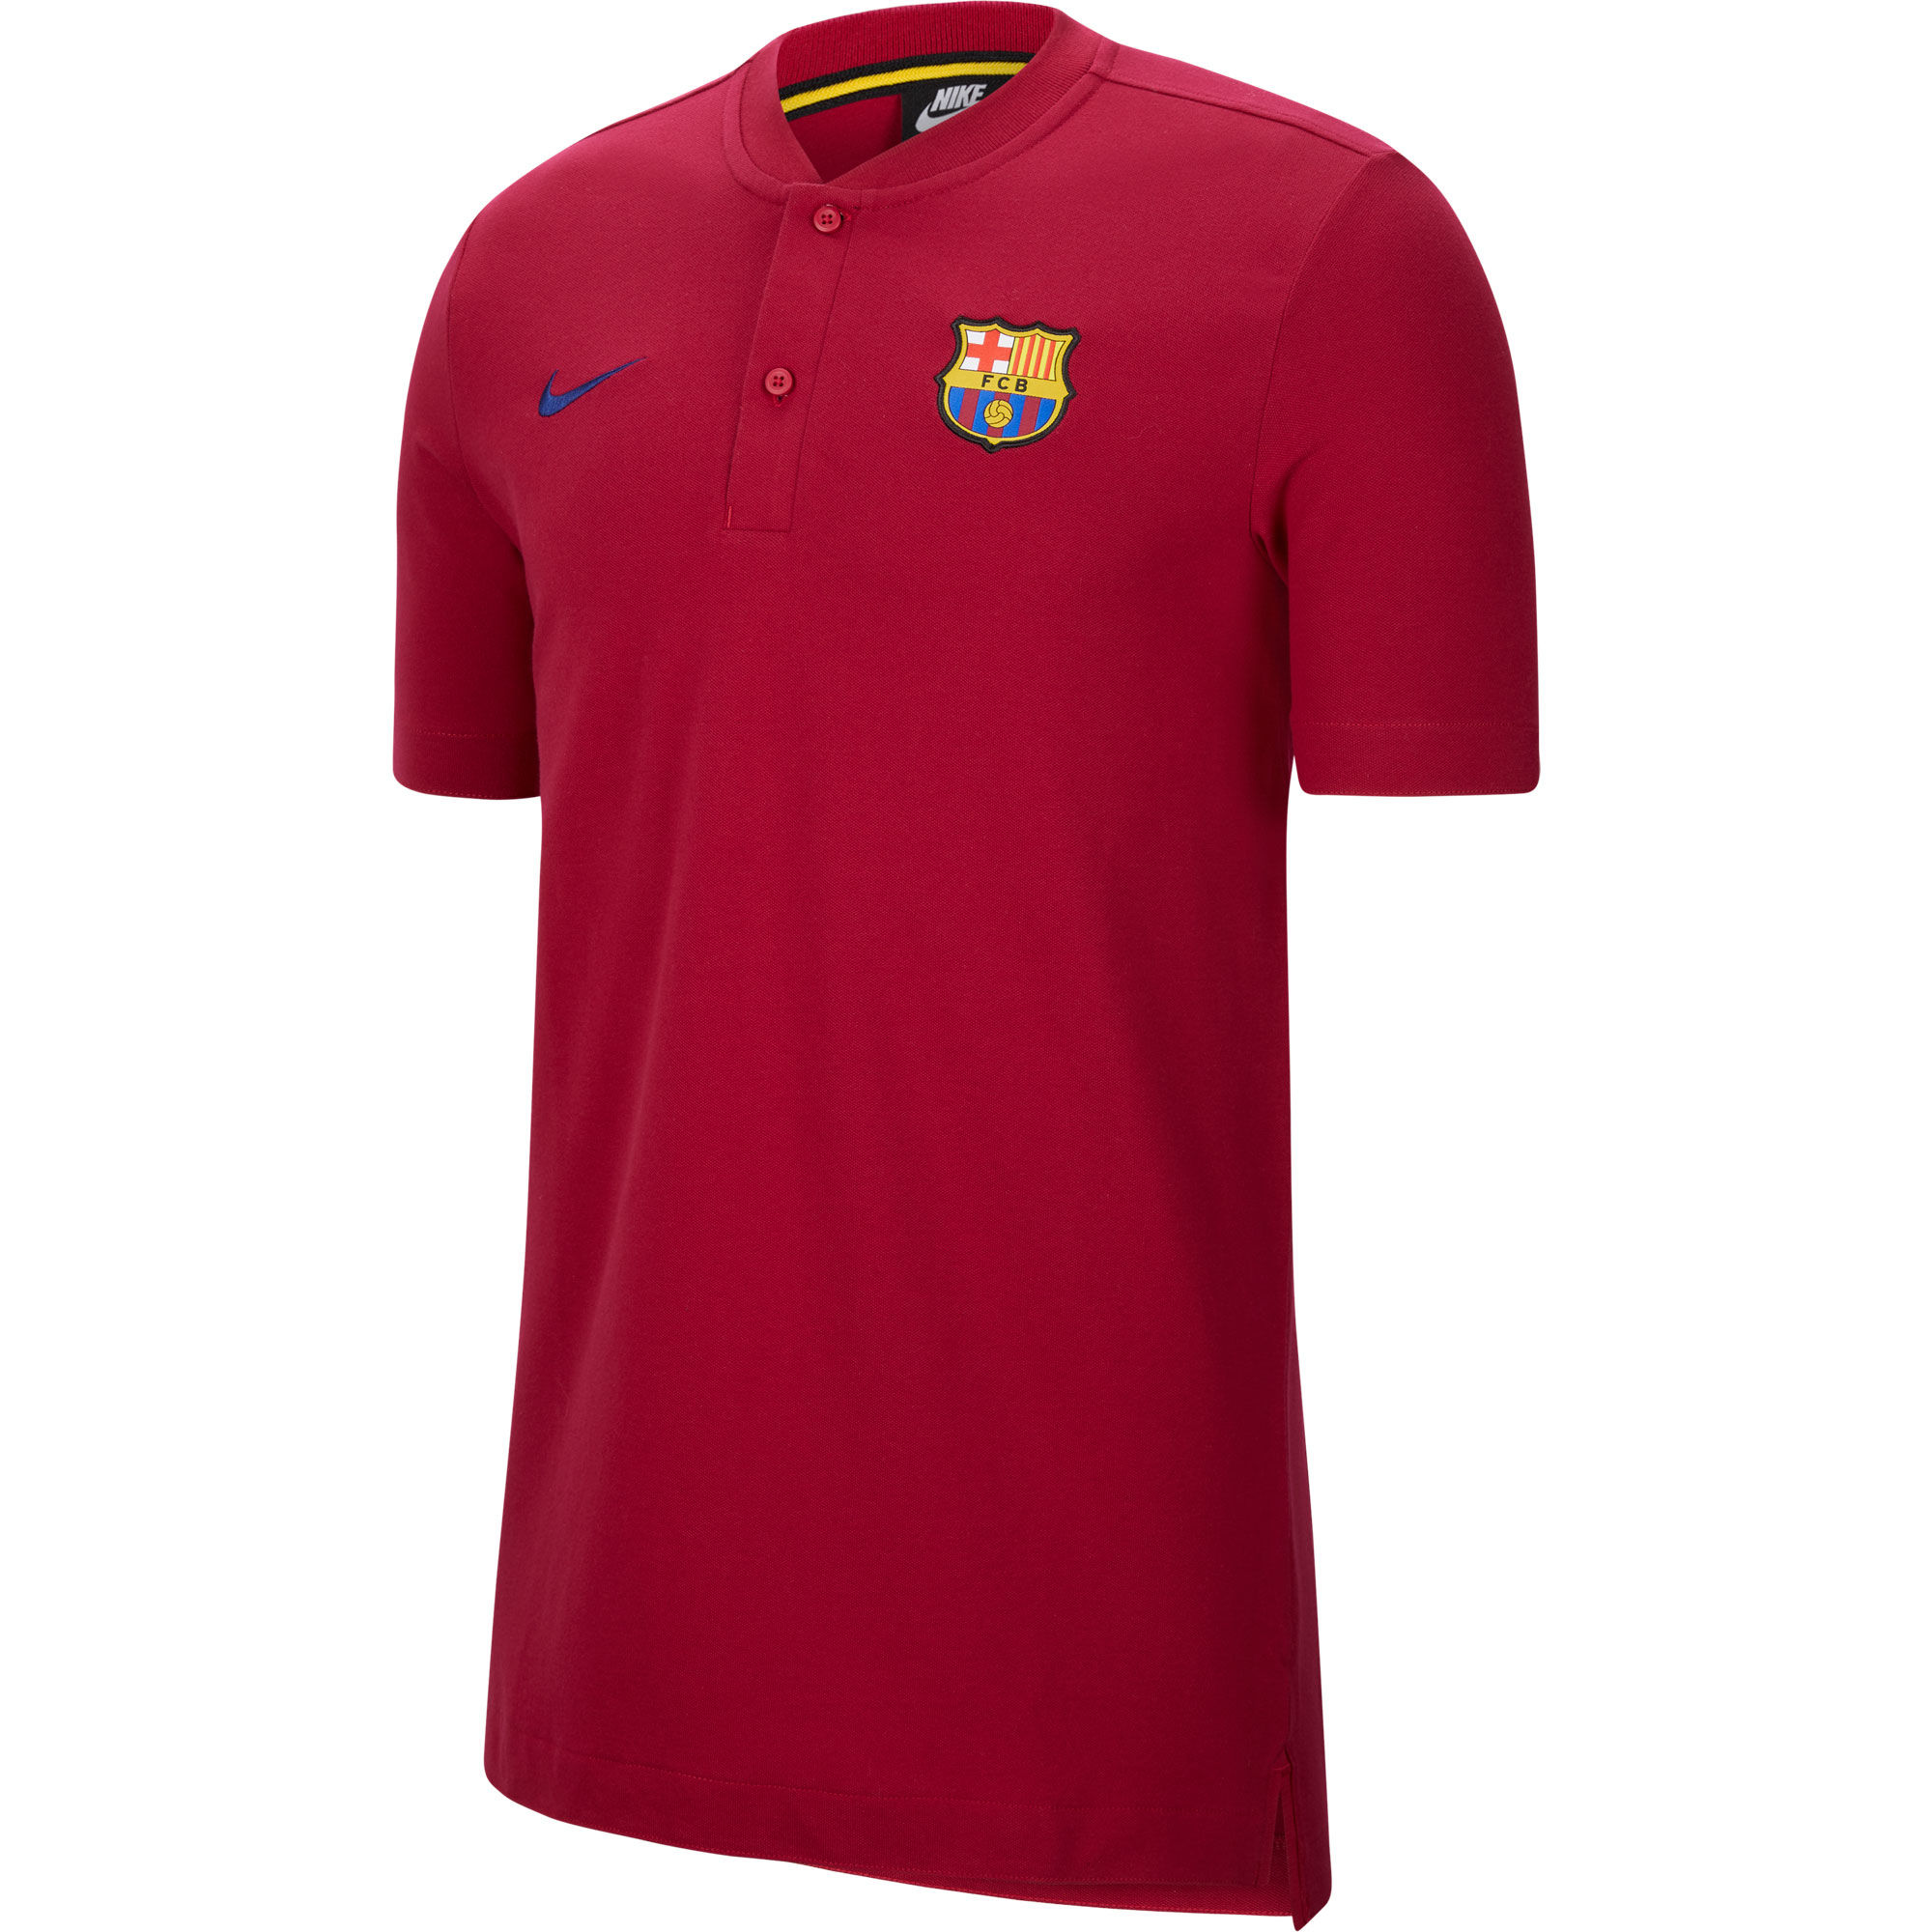 Barcelona - Tričko s límečkem "Modern Grand Slam" - červené, sezóna 2020/21